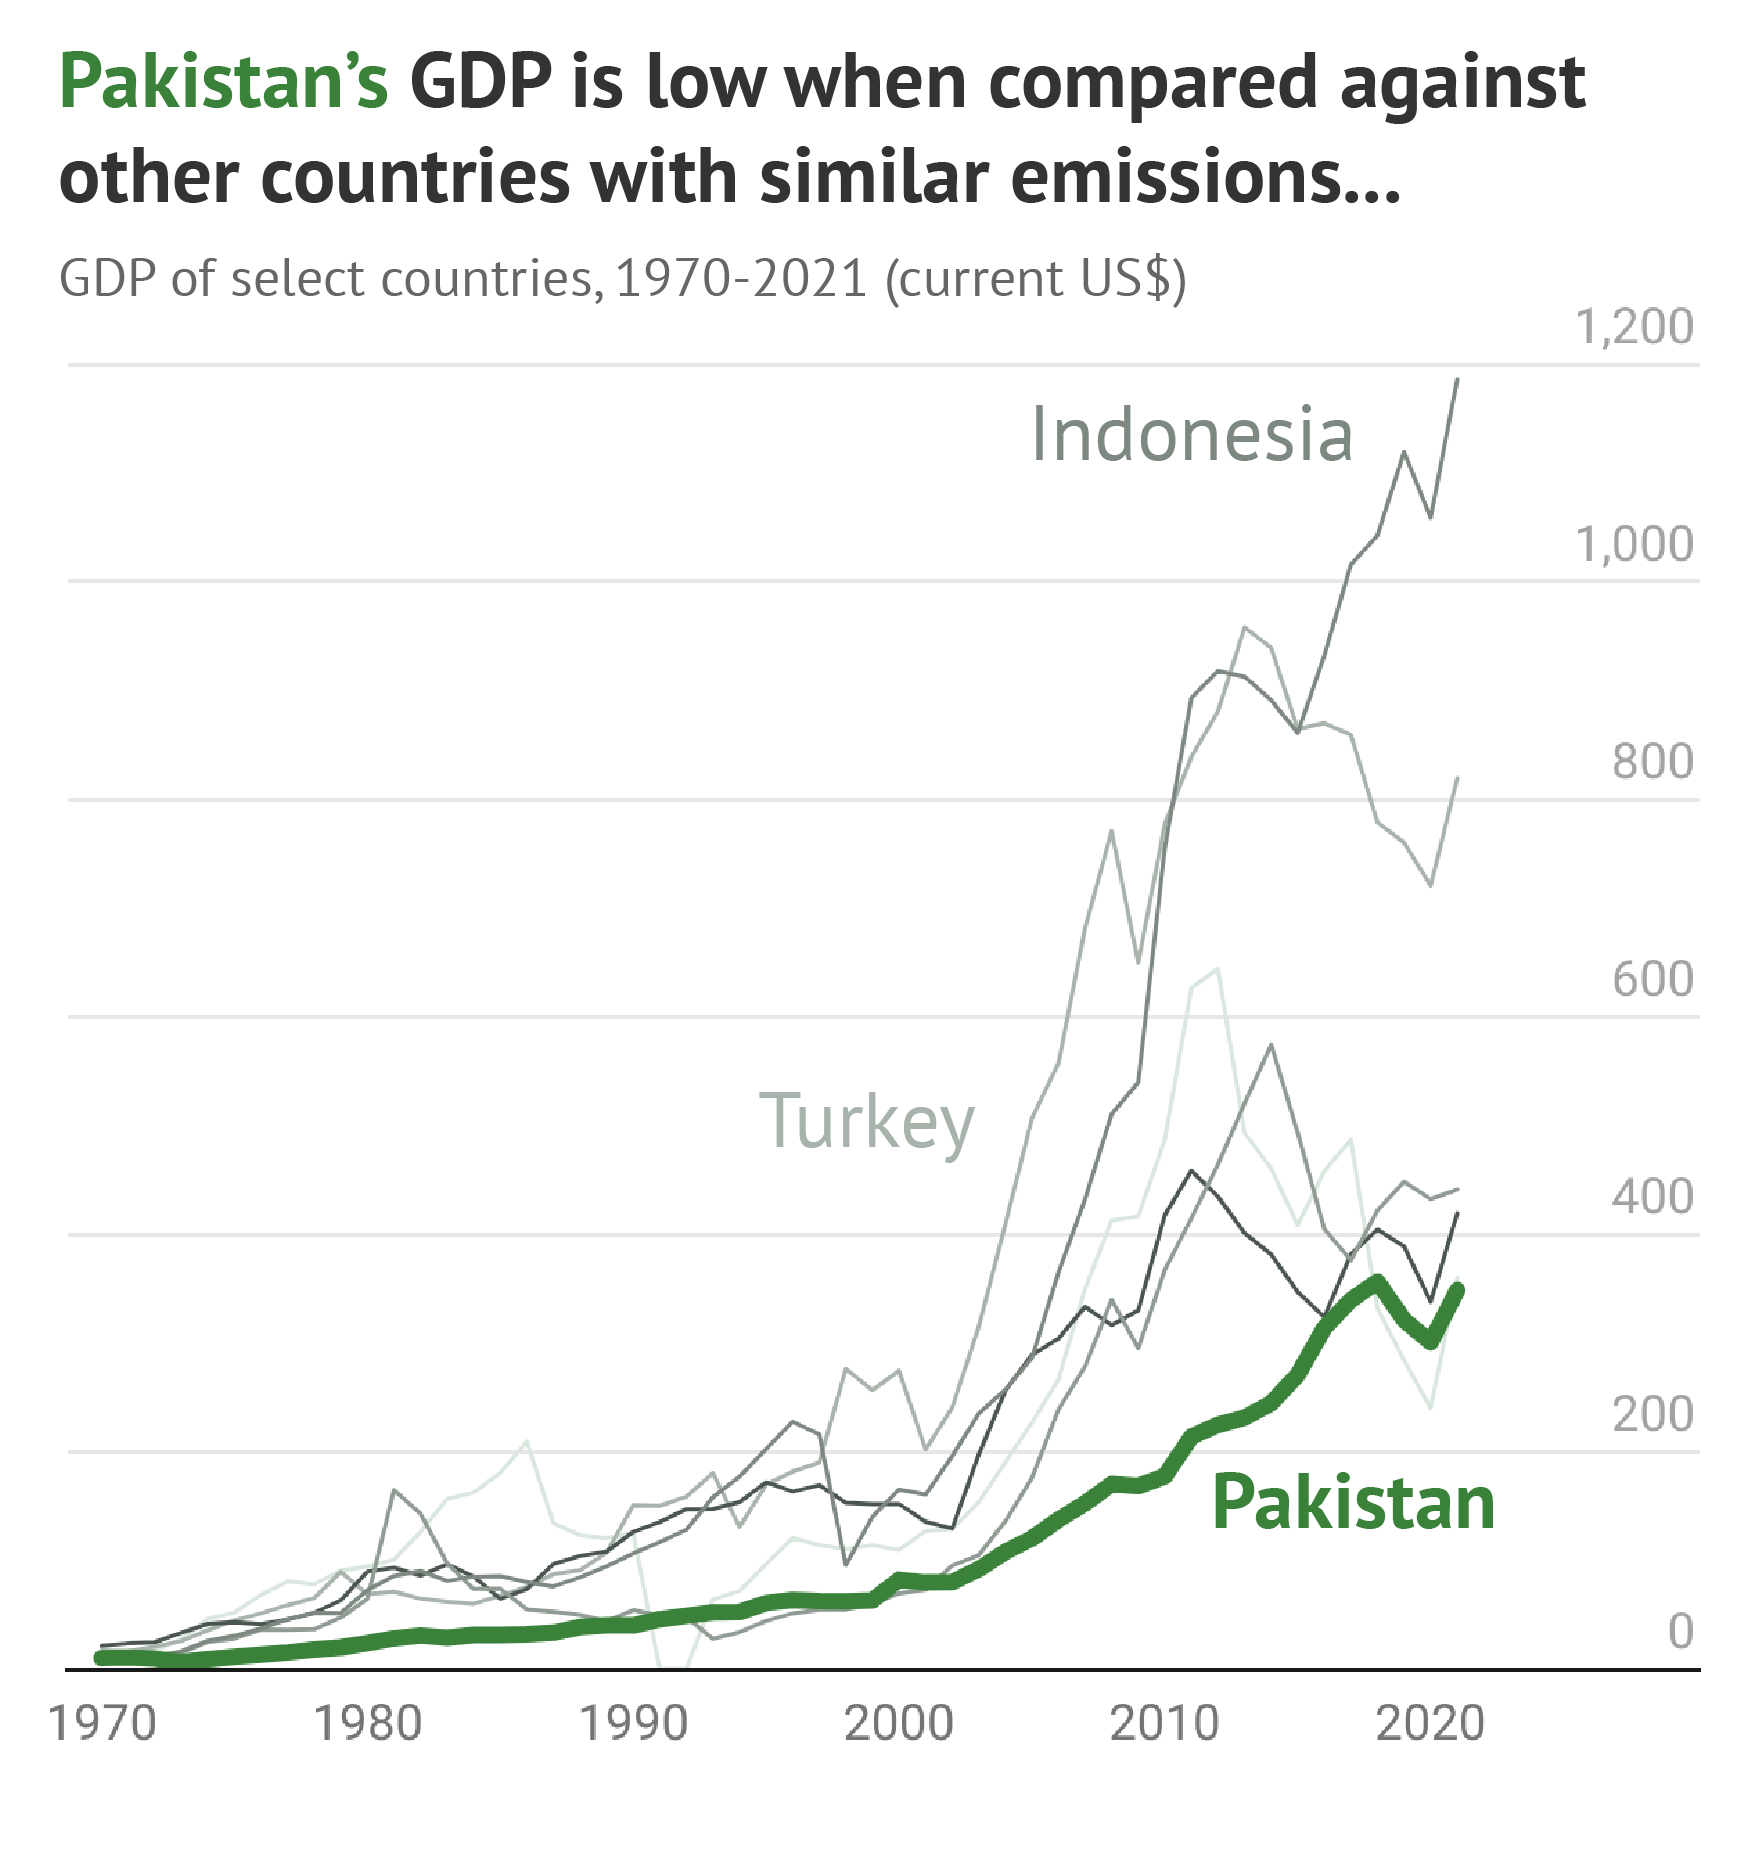 Biểu đồ cho thấy GDP của Pakistan thấp khi so sánh với các quốc gia khác có lượng khí thải tương tự.